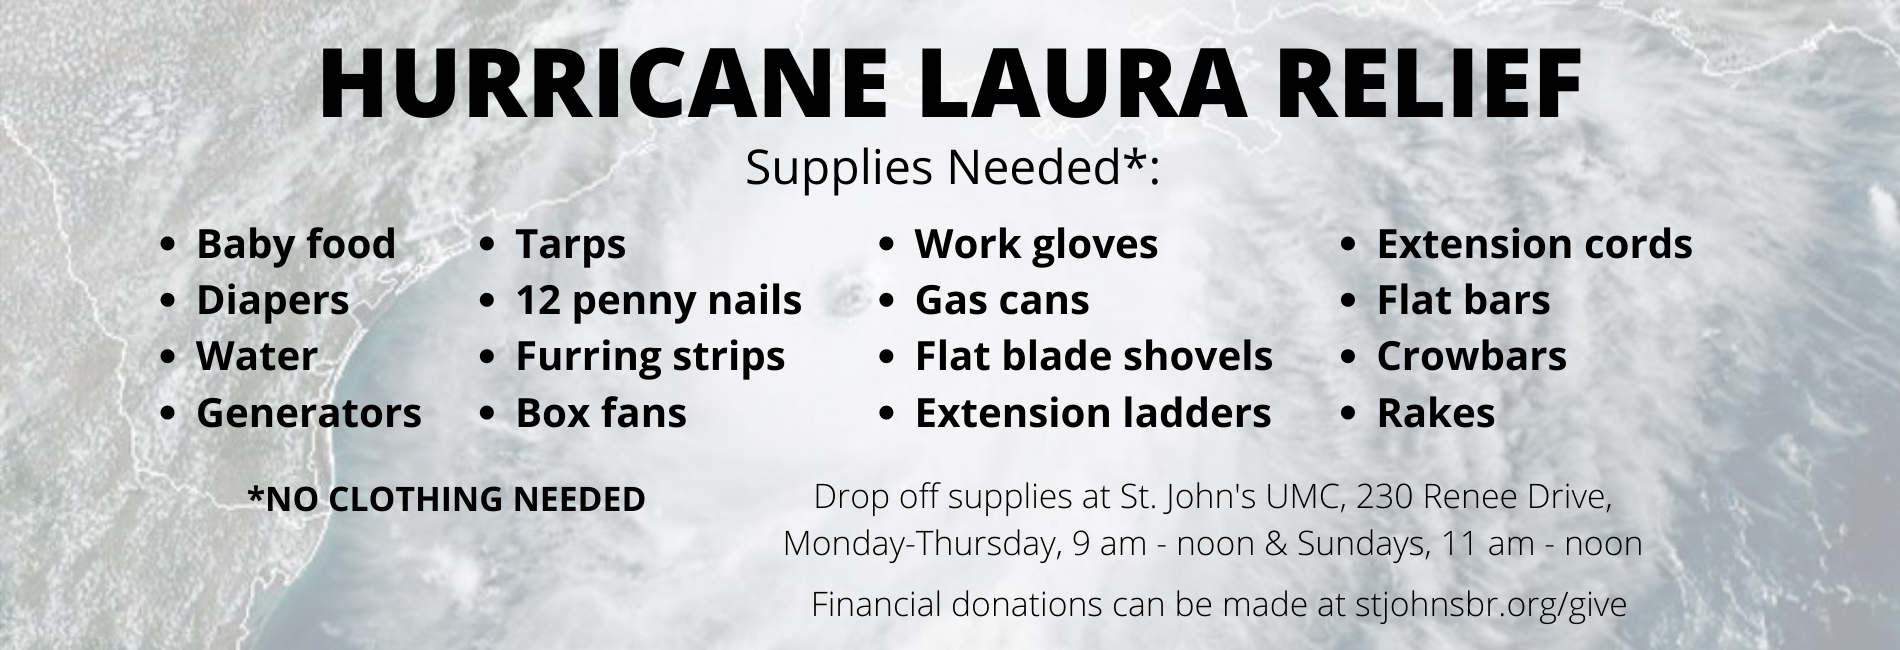 Hurricane Laura Relief Supplies Needed